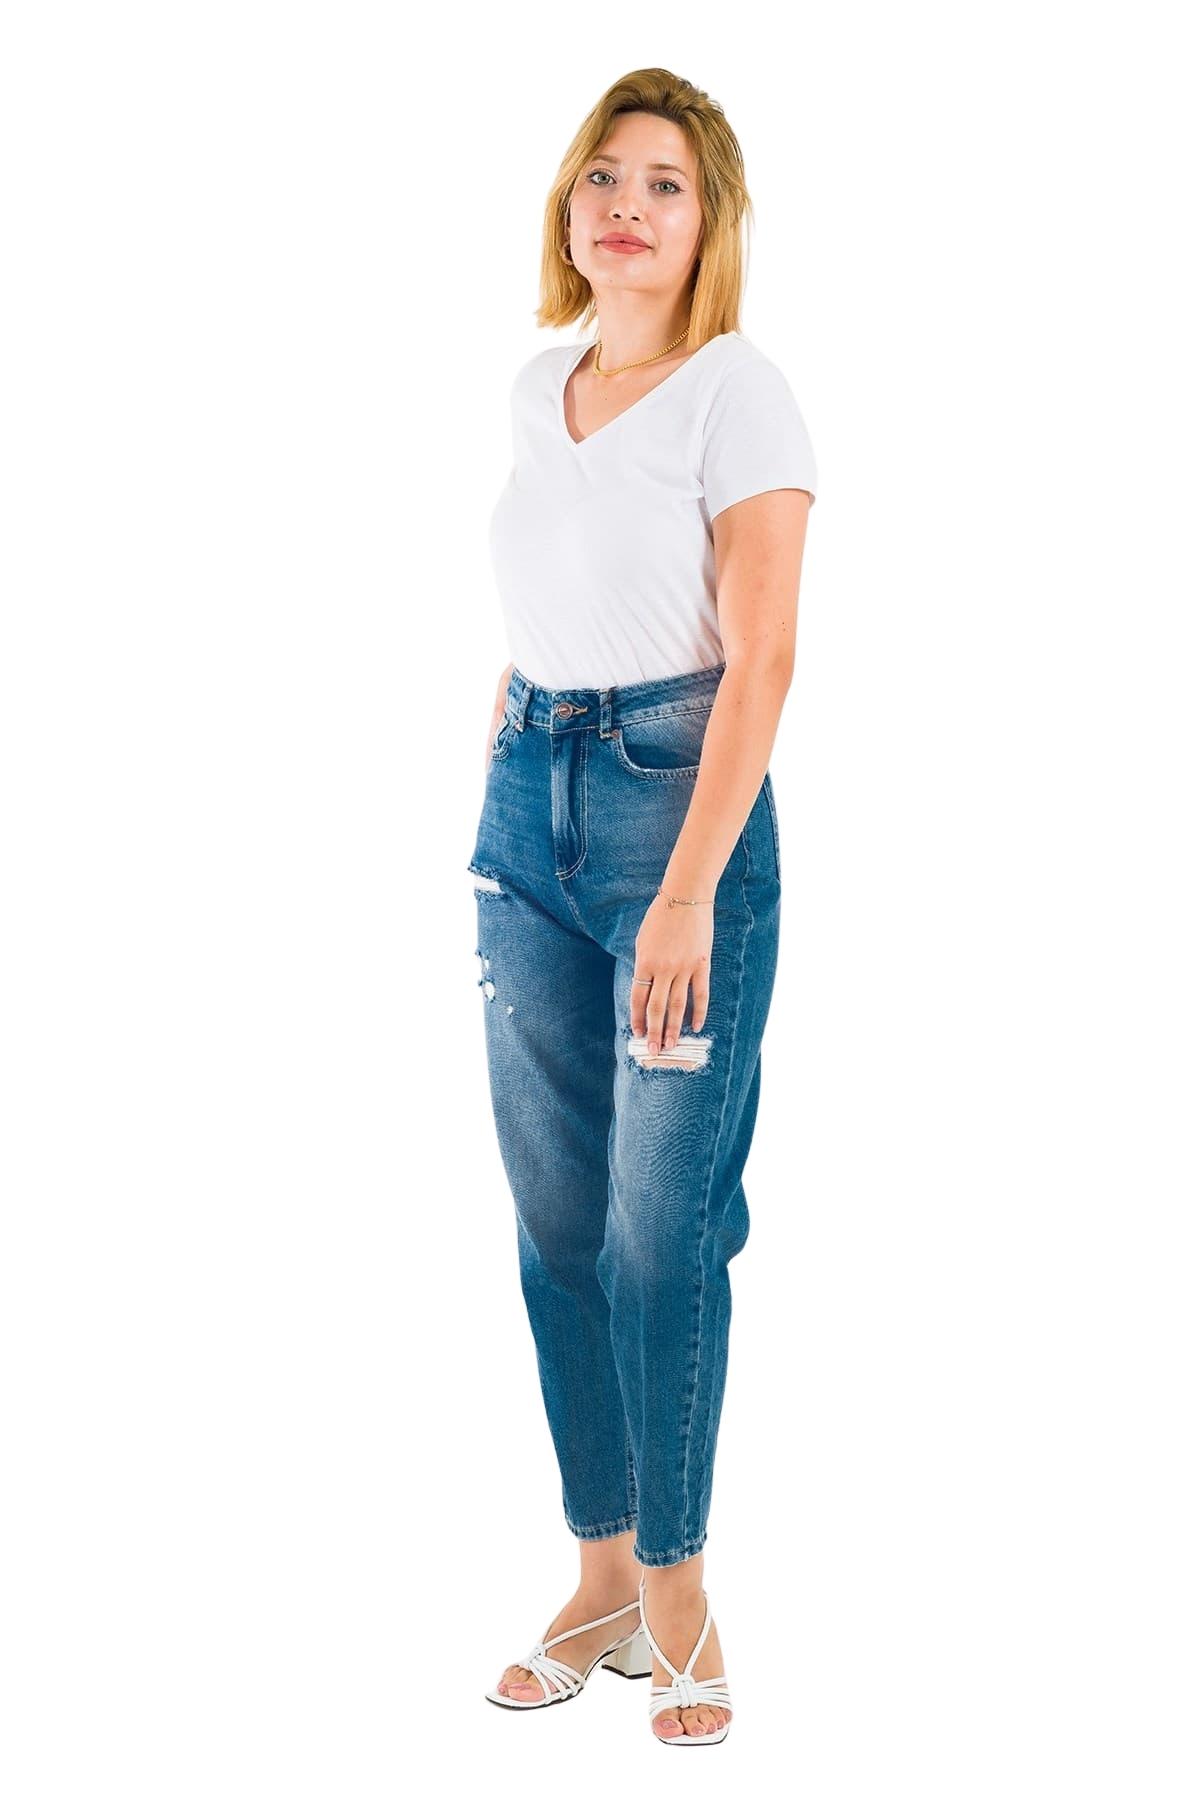 Desperado 303 Yırtık Desenli Geniş Paçalı Mom Jeans Kadın Kot Pantolon